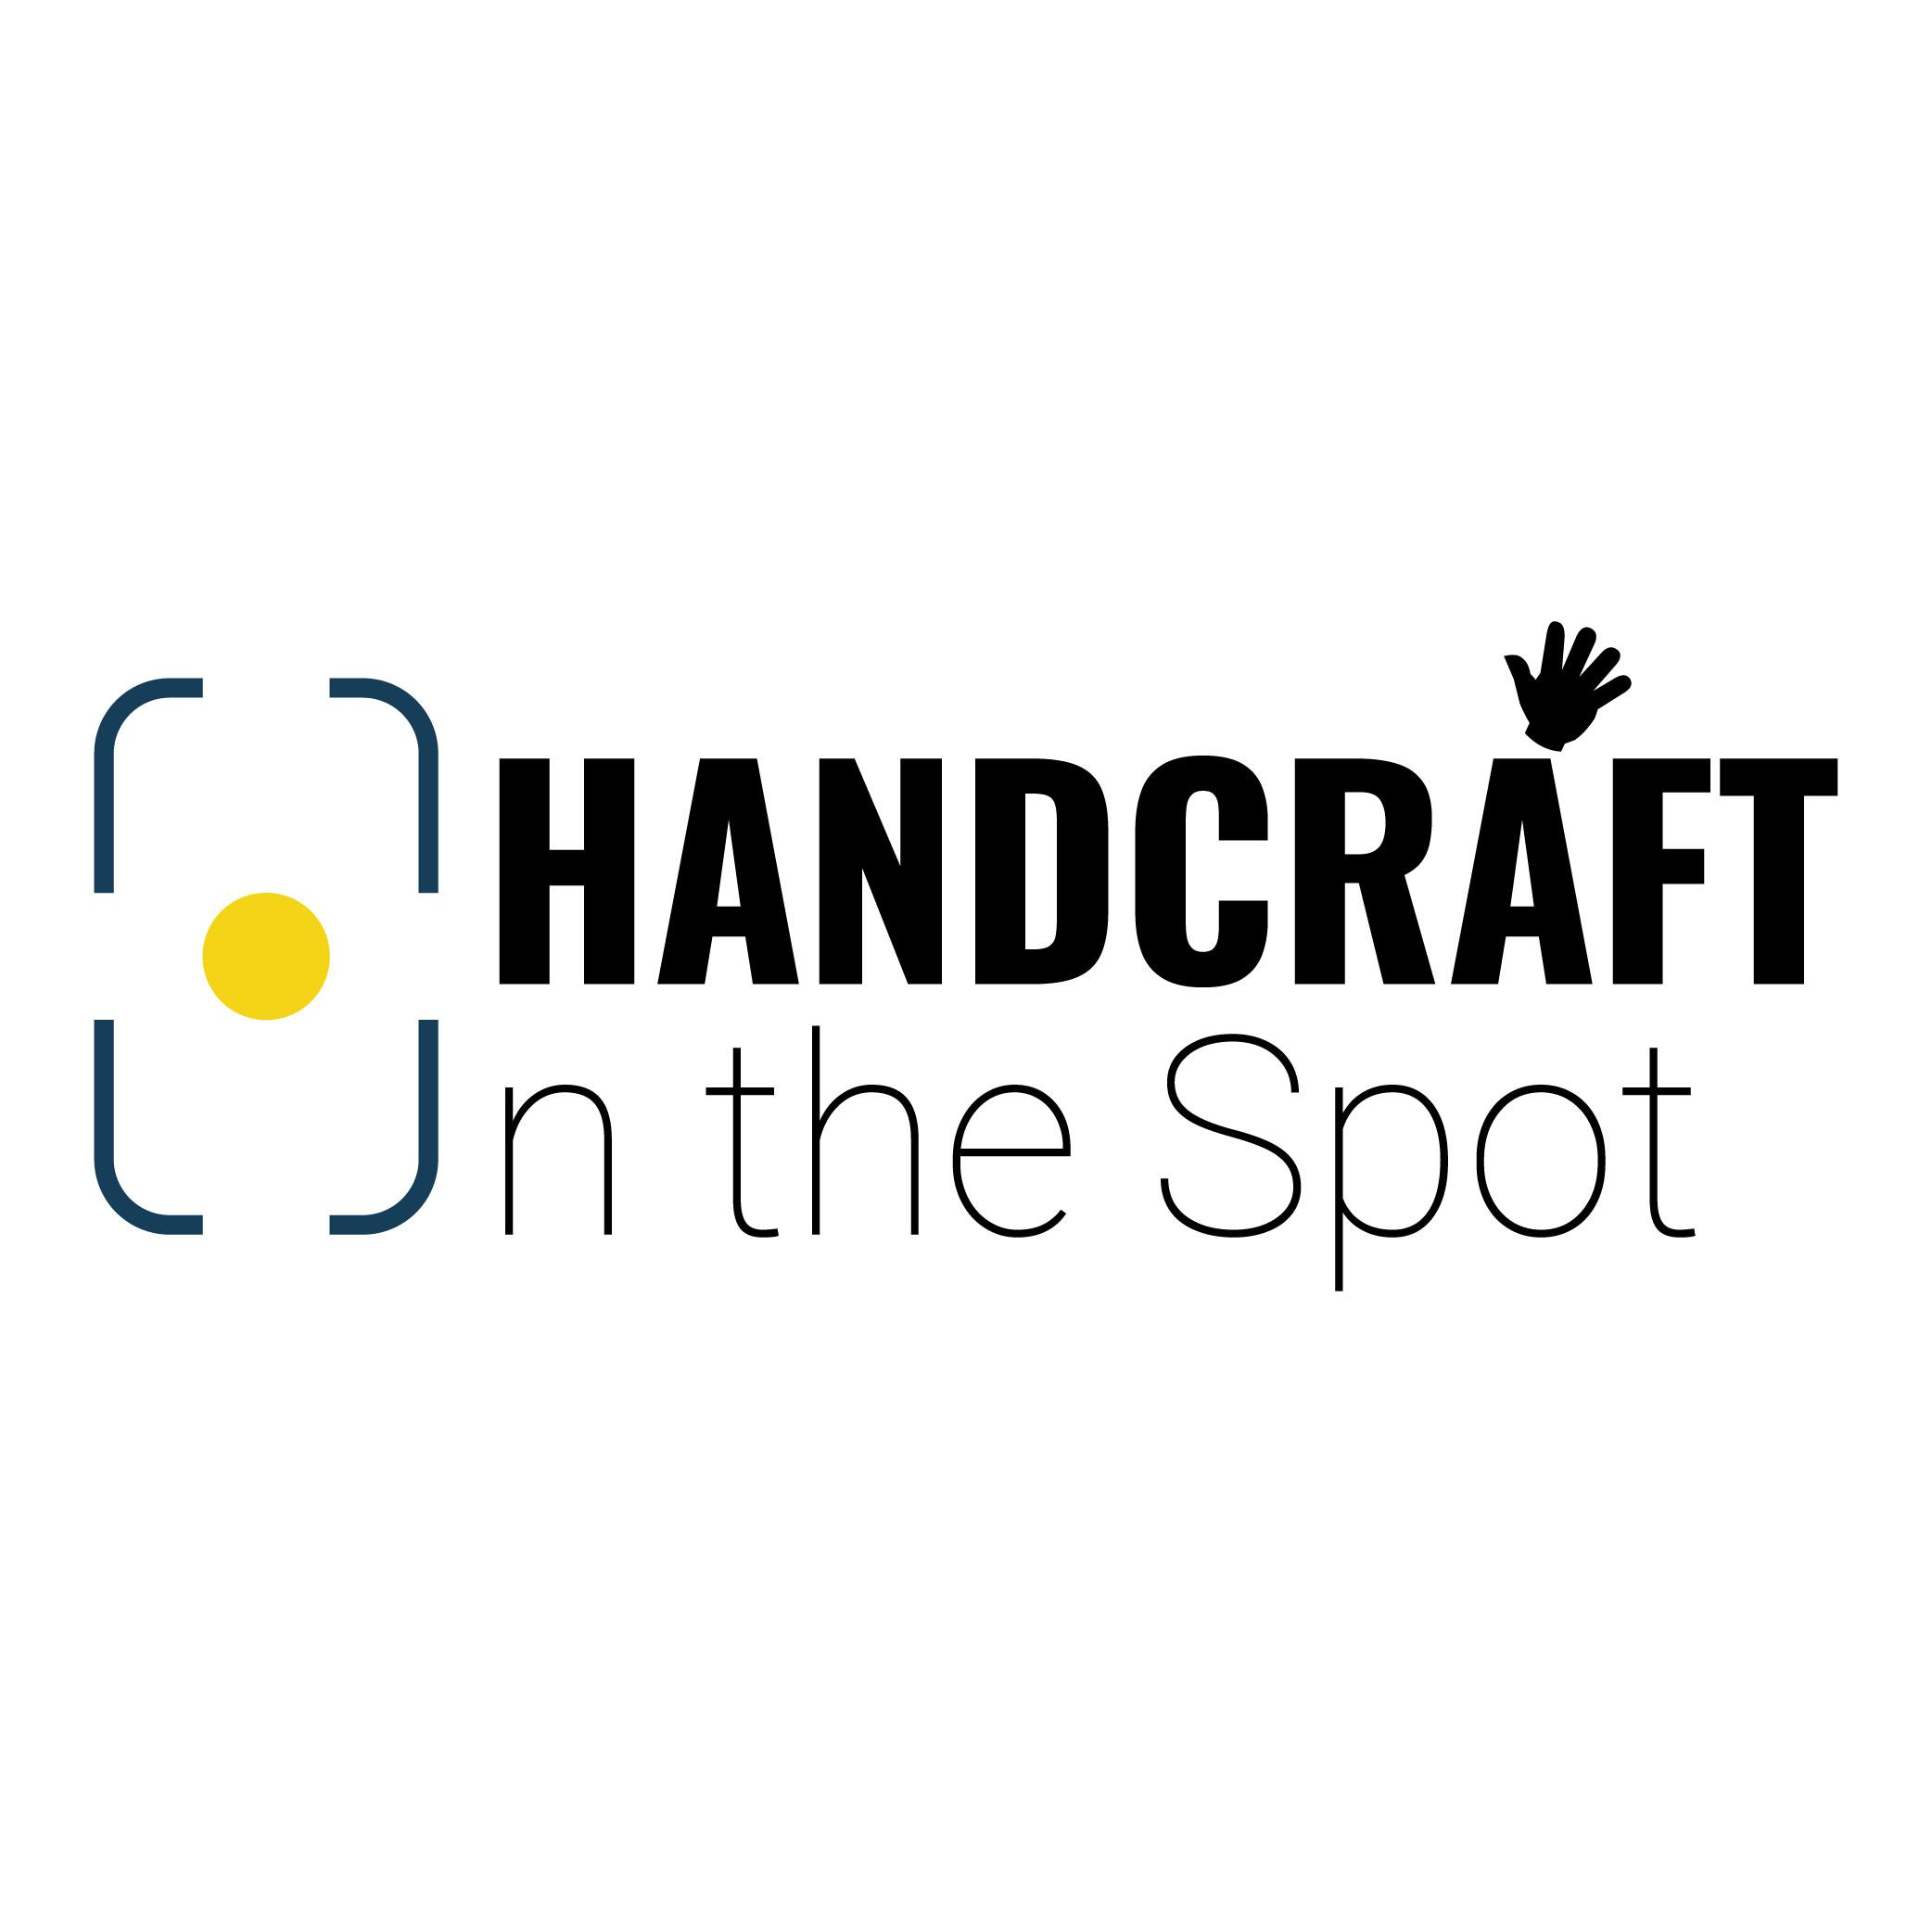 Handcraft_Onthespot